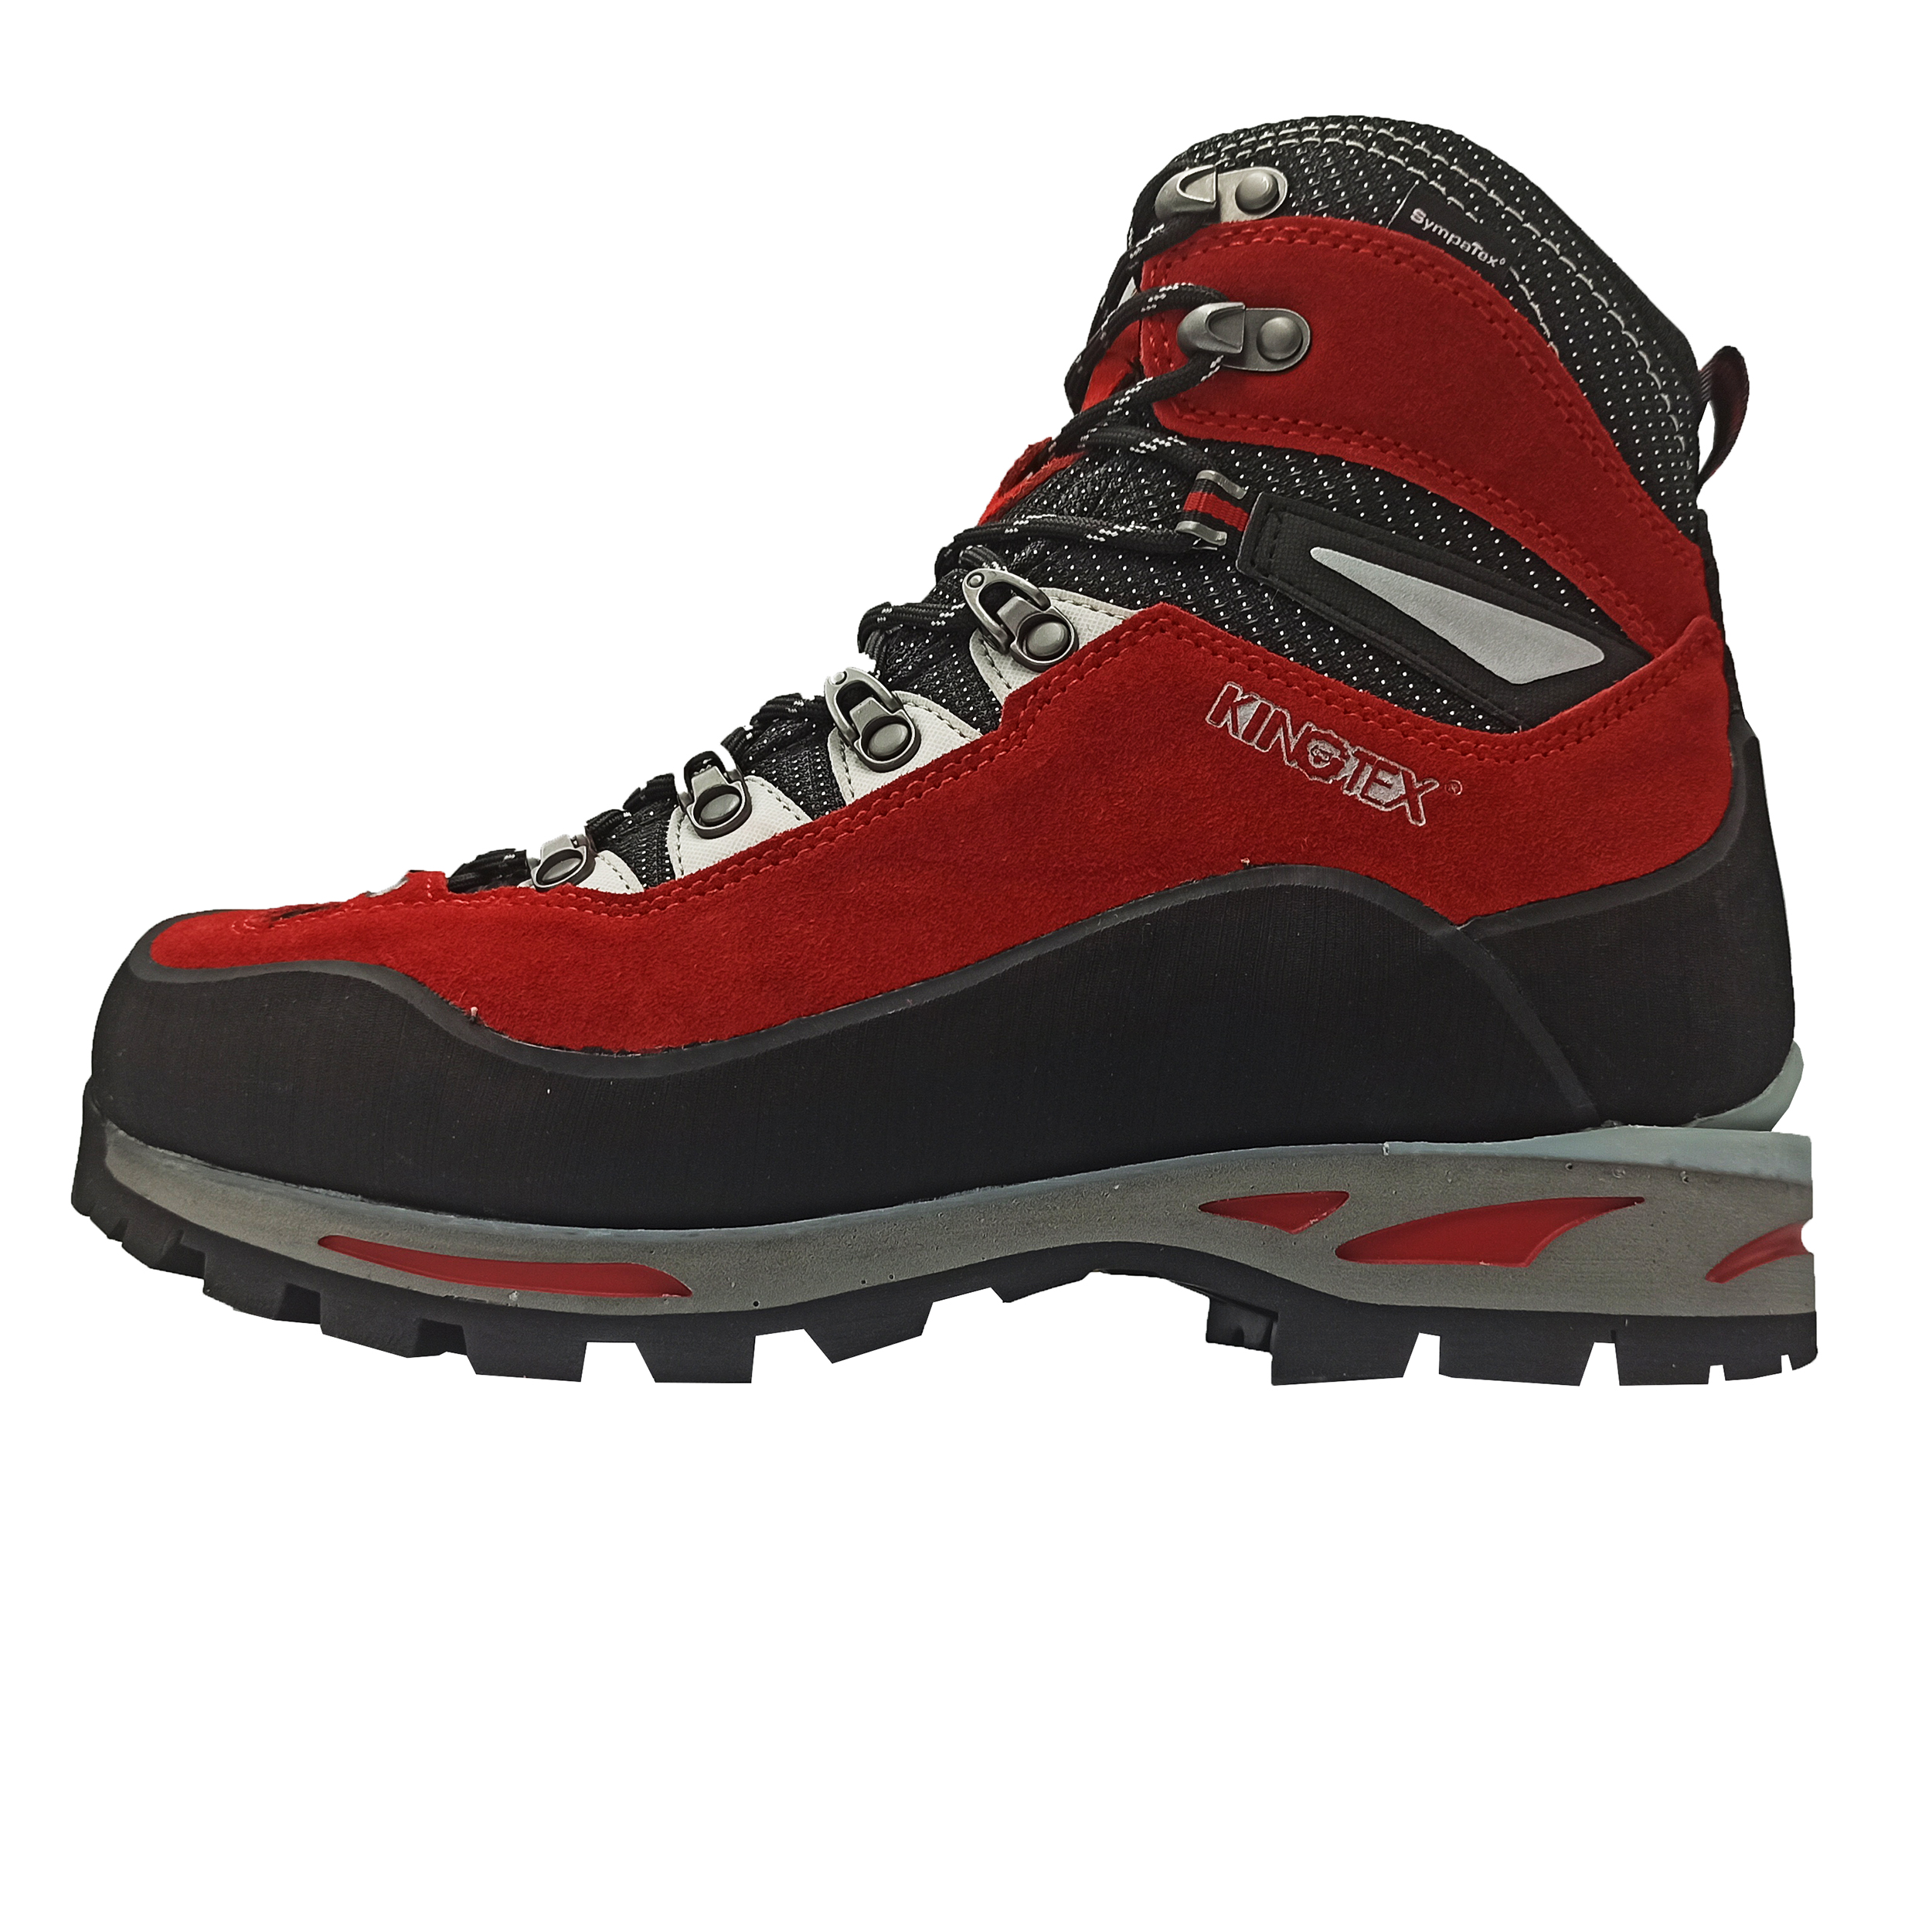 نکته خرید - قیمت روز کفش کوهنوردی مردانه کینگ تکس مدل K2-R خرید